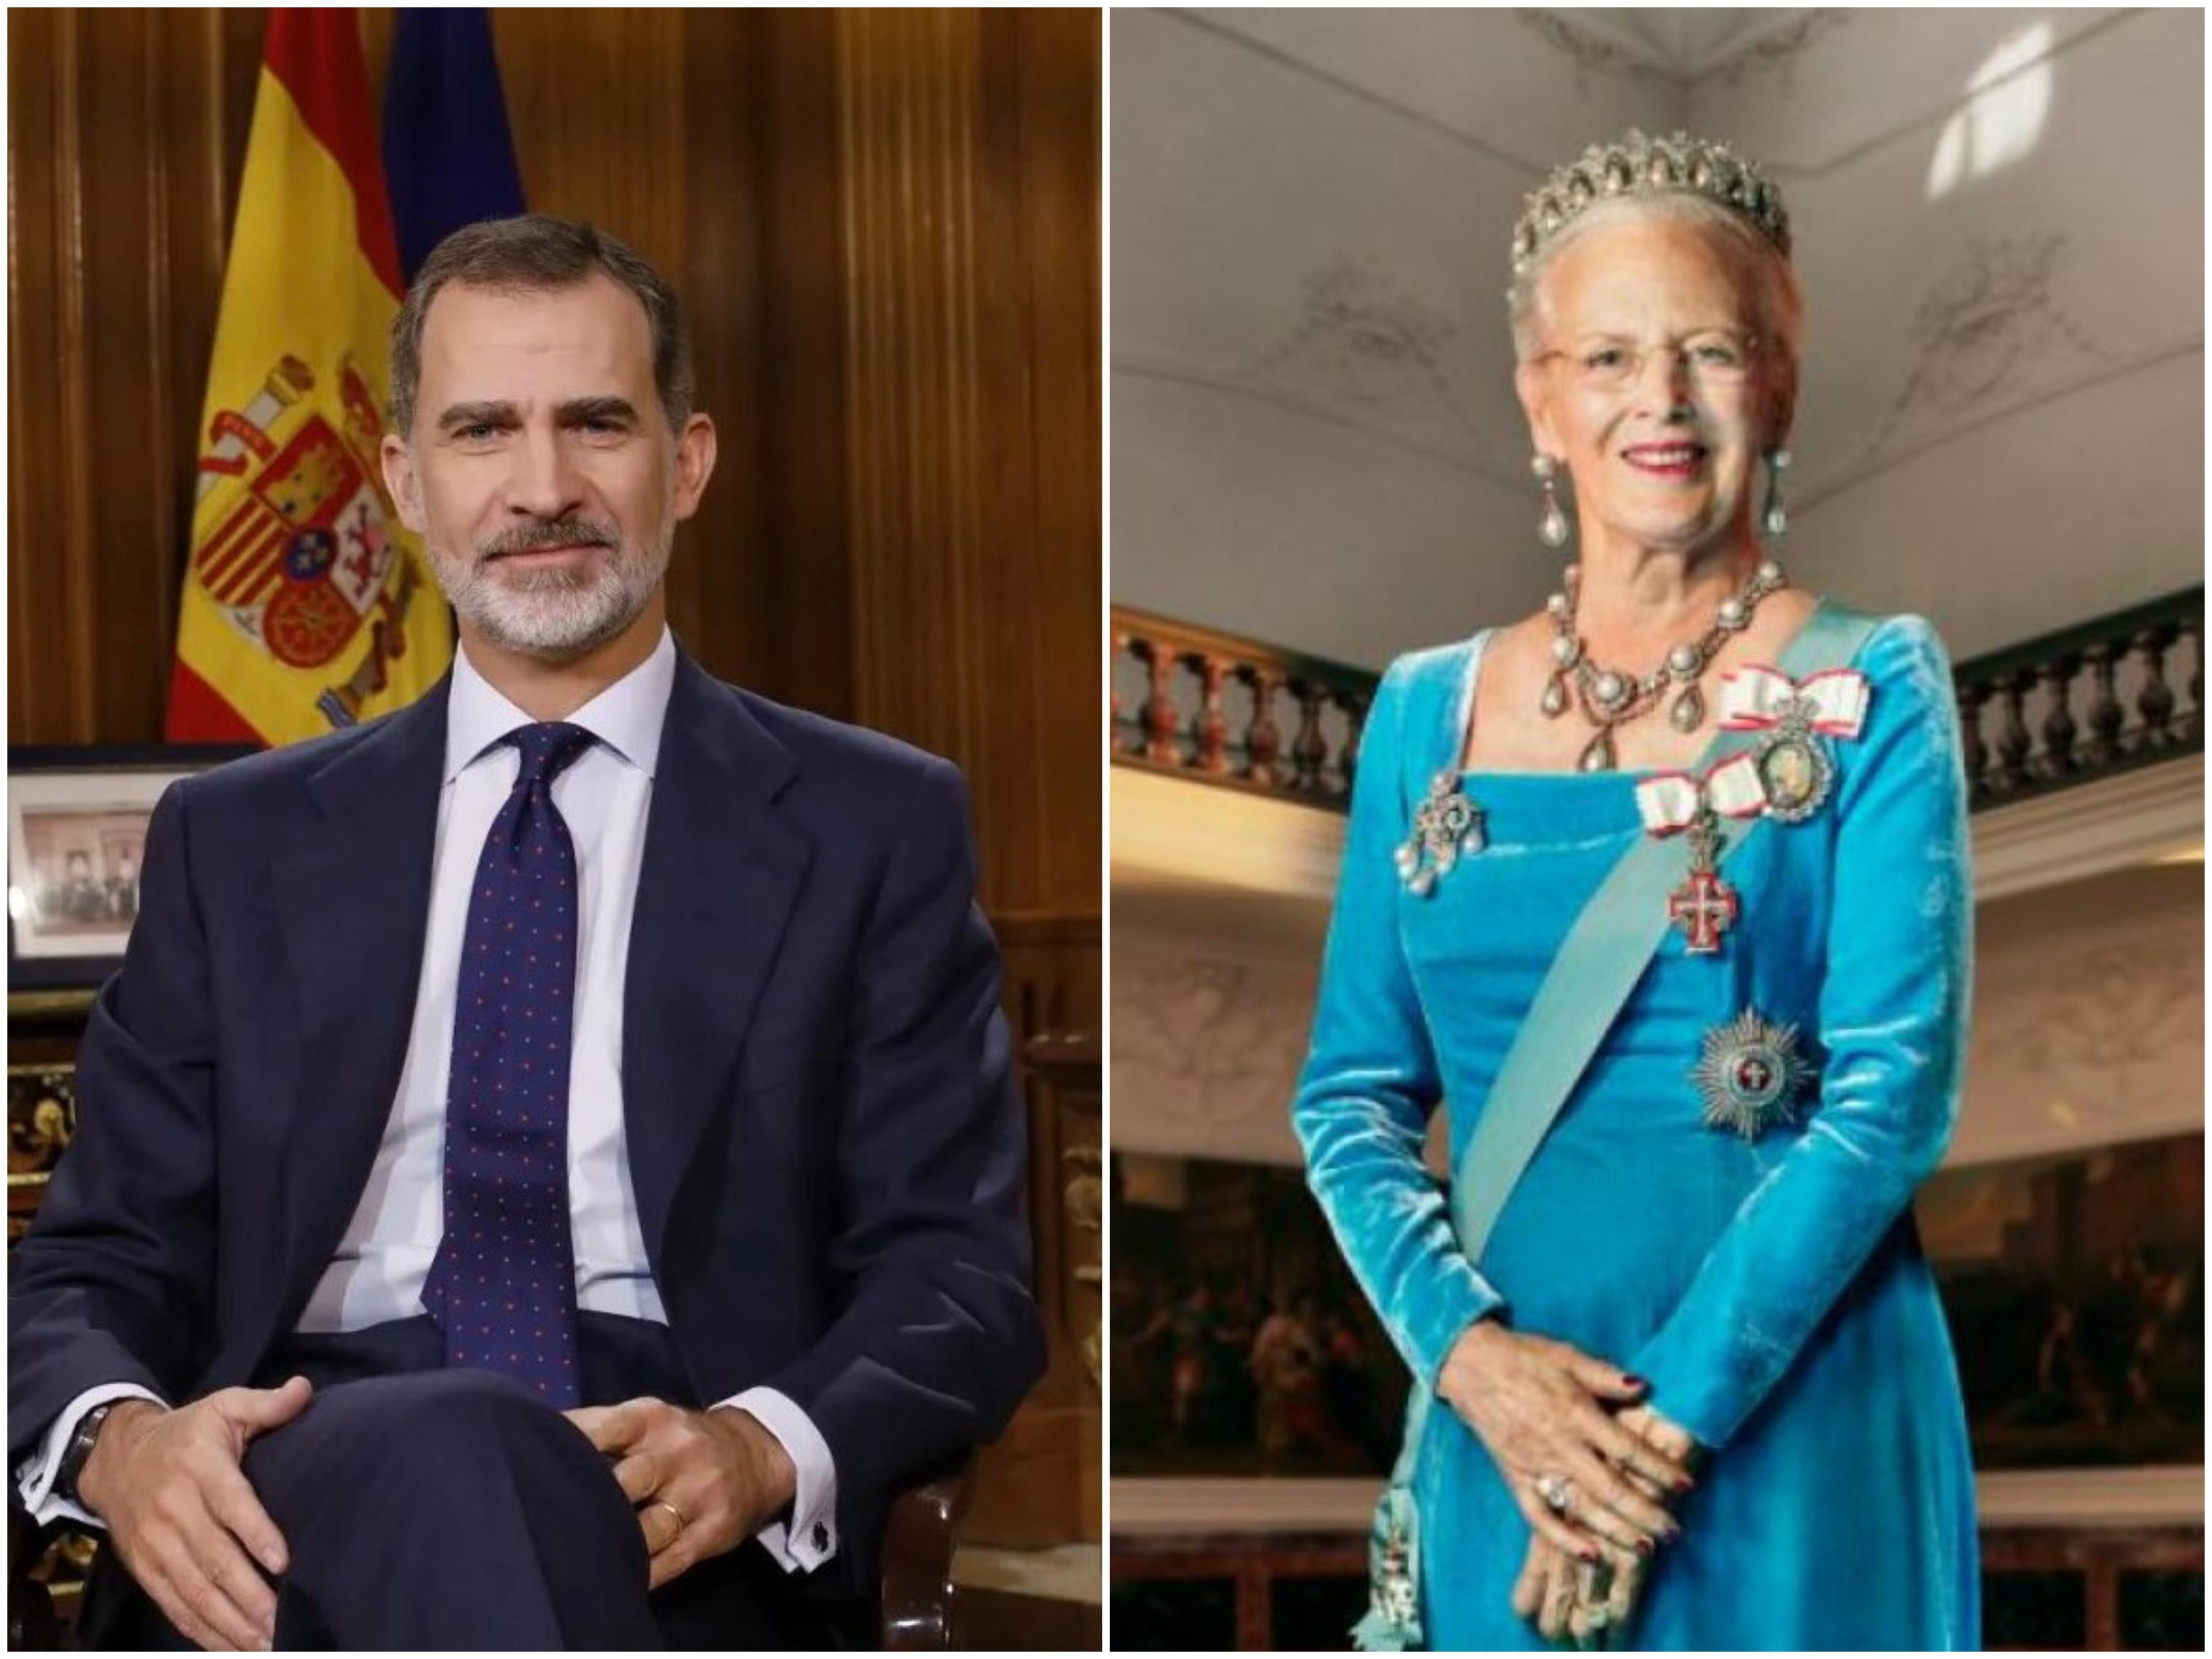 Problemi u dva kraljevstva: Španski kralj i danska kraljica pozitivni na koronavirus